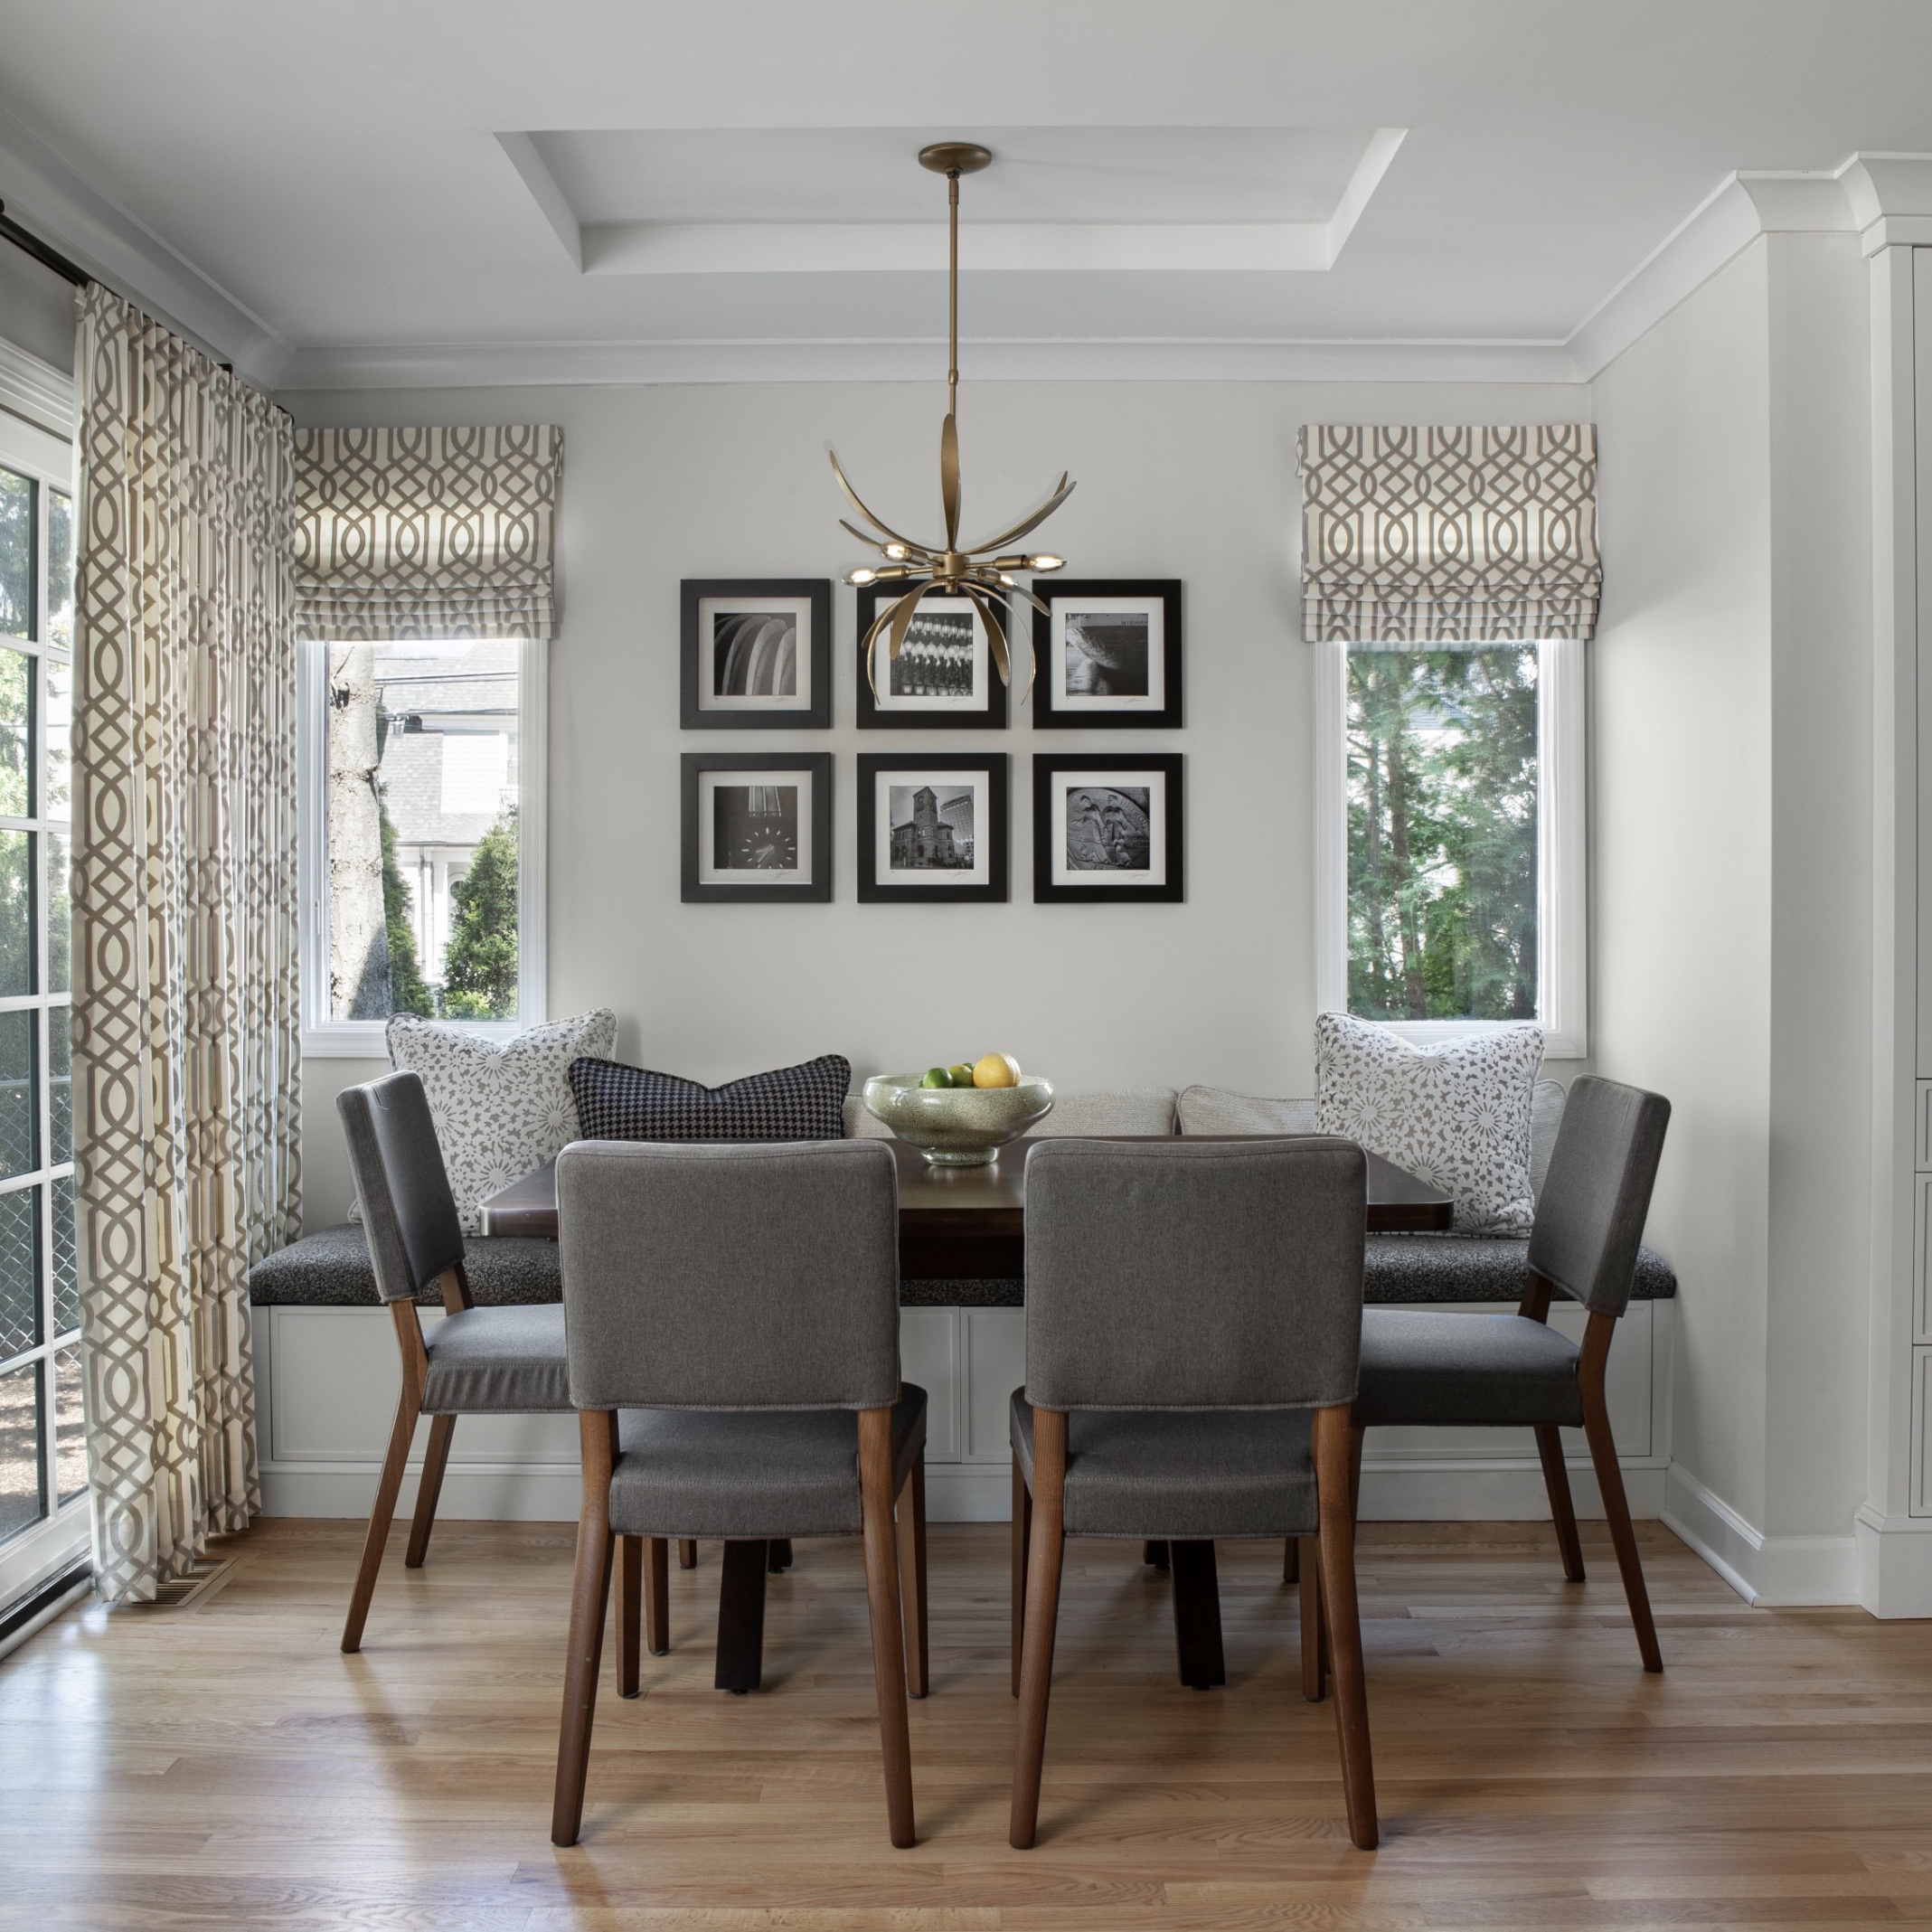 Fairfax dining room designed by interior designer Michigan, Margeaux Interiors